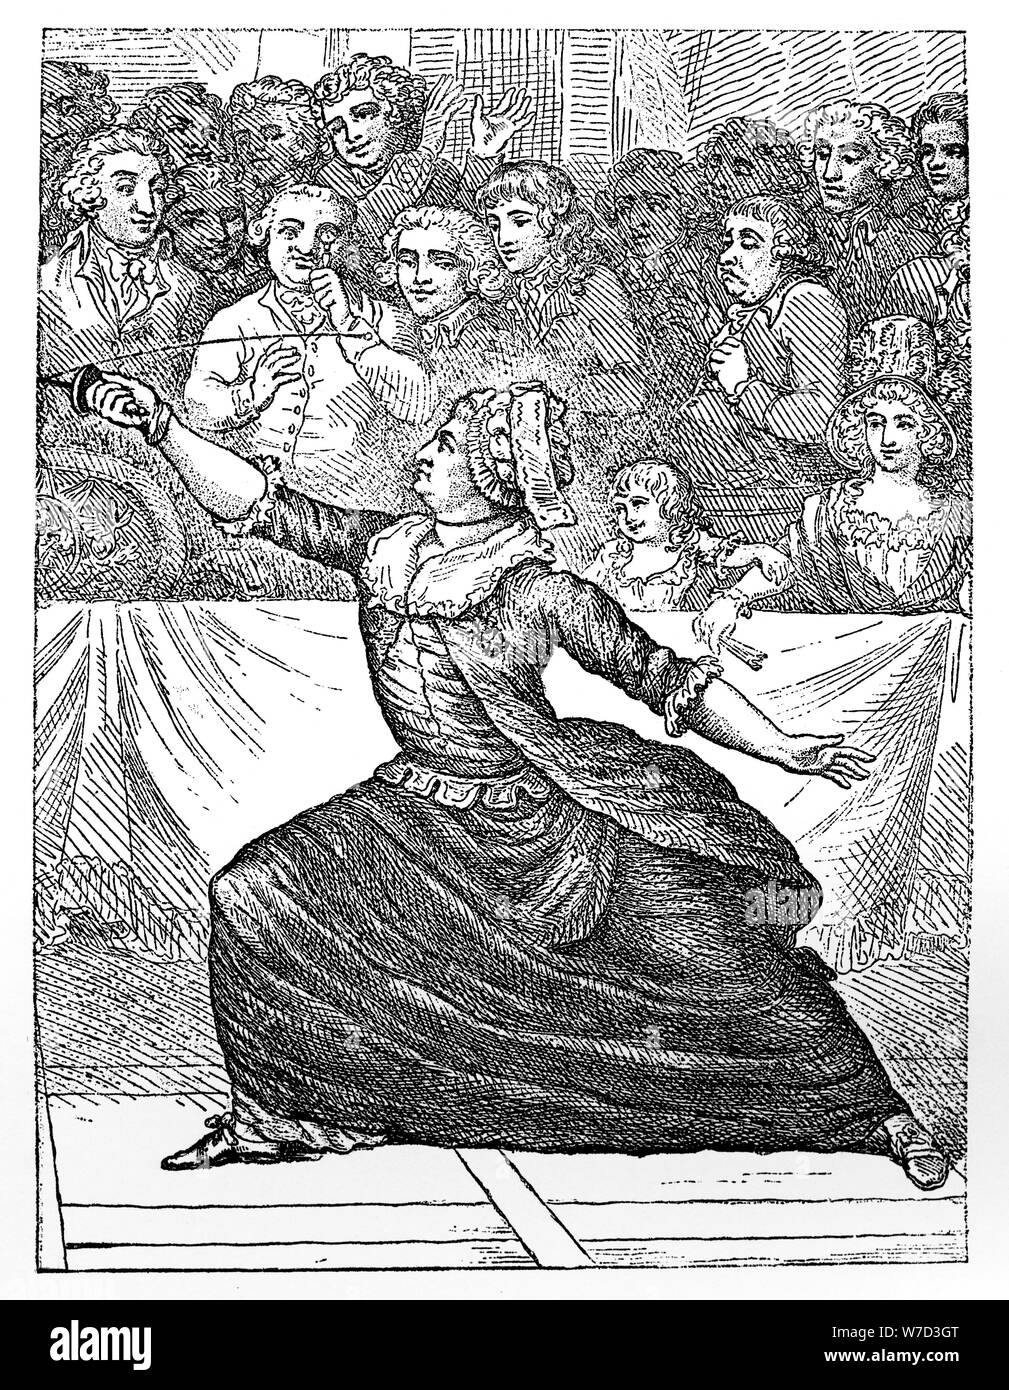 Mlle la Chevaliere d'Eon de Beaumont fencing, 18th century. Artist: Unknown Stock Photo